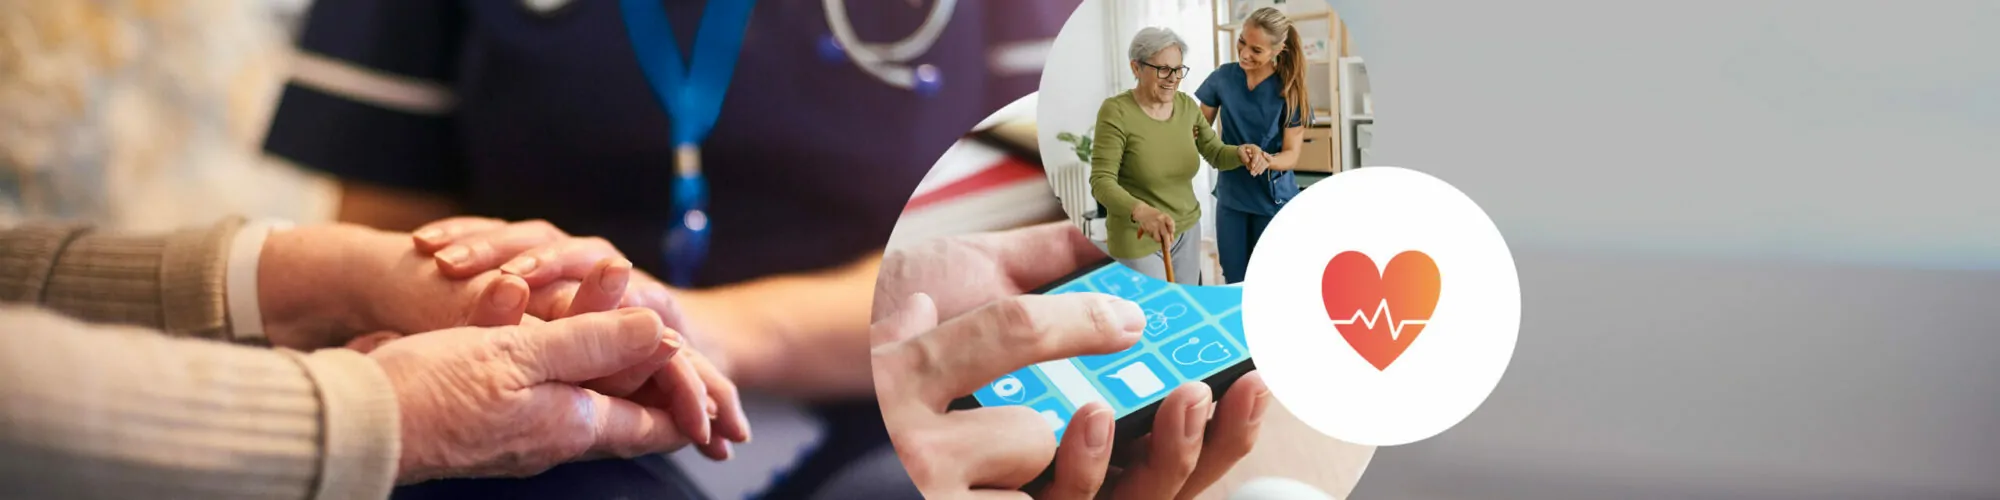 Bild von einer Pflegekraft, die eine ältere Patienten hilft und unterstützt, zu Hause zu gehen, daneben ein Herz Symbol und eine Person, die auf ein Tablet schaut